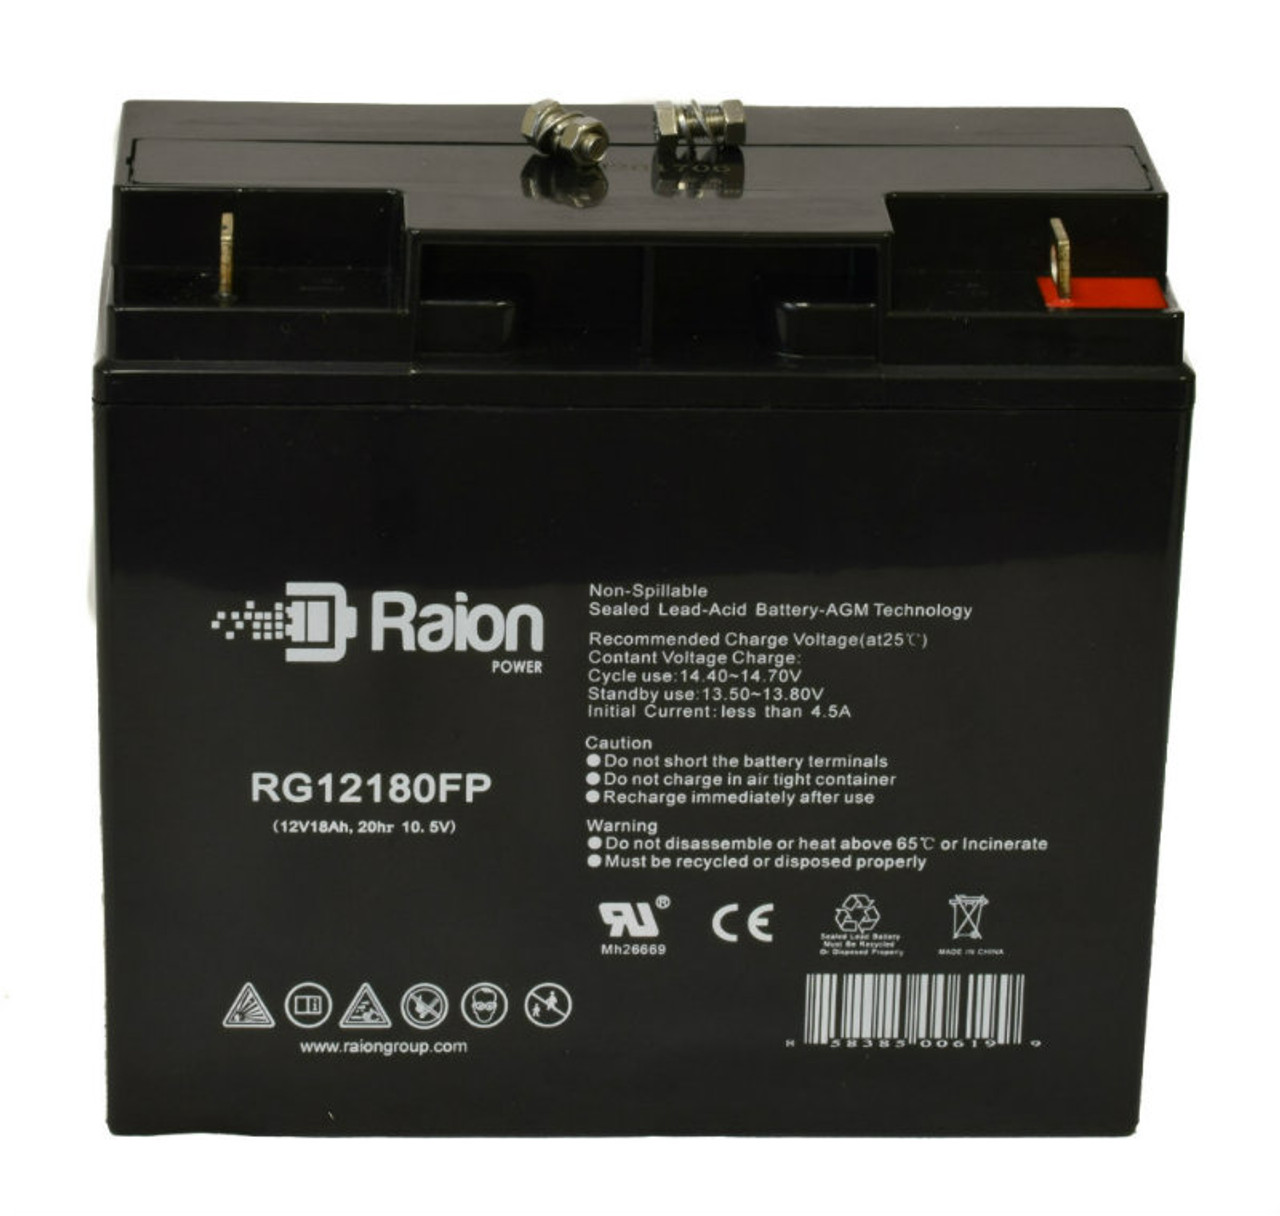 Raion Power RG12180FP 12V 18Ah Lead Acid Battery for Exell EB12180